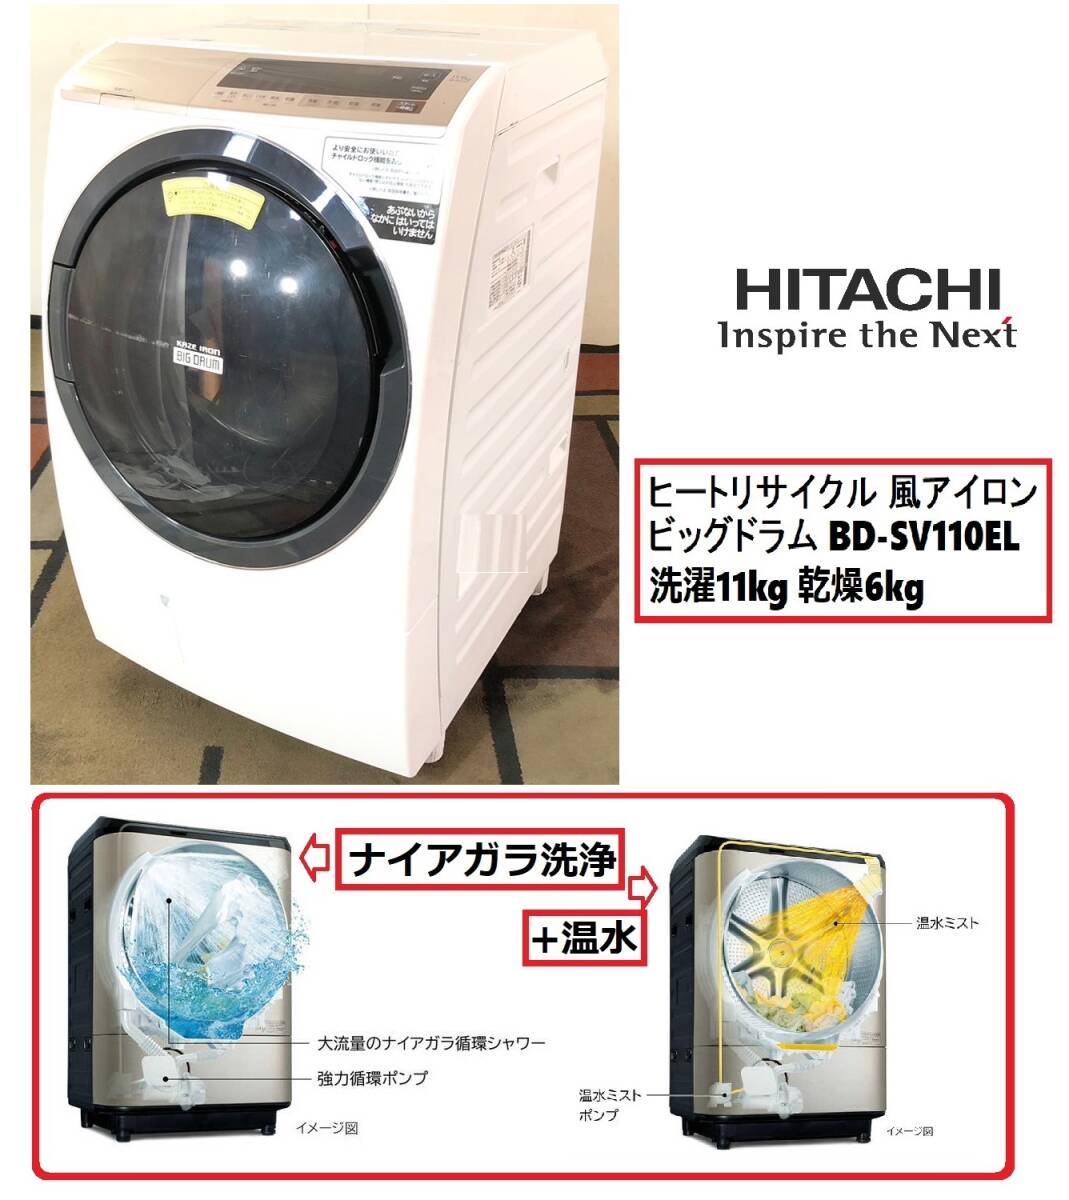 【日立】ドラム式洗濯乾燥機 HITACHI BD-SV110EL 洗濯11kg 乾燥6kg 左開きビッグドラム W63×H105×D71.5 ヒートリサイクル(C)BE3NM-2-N#24_画像1